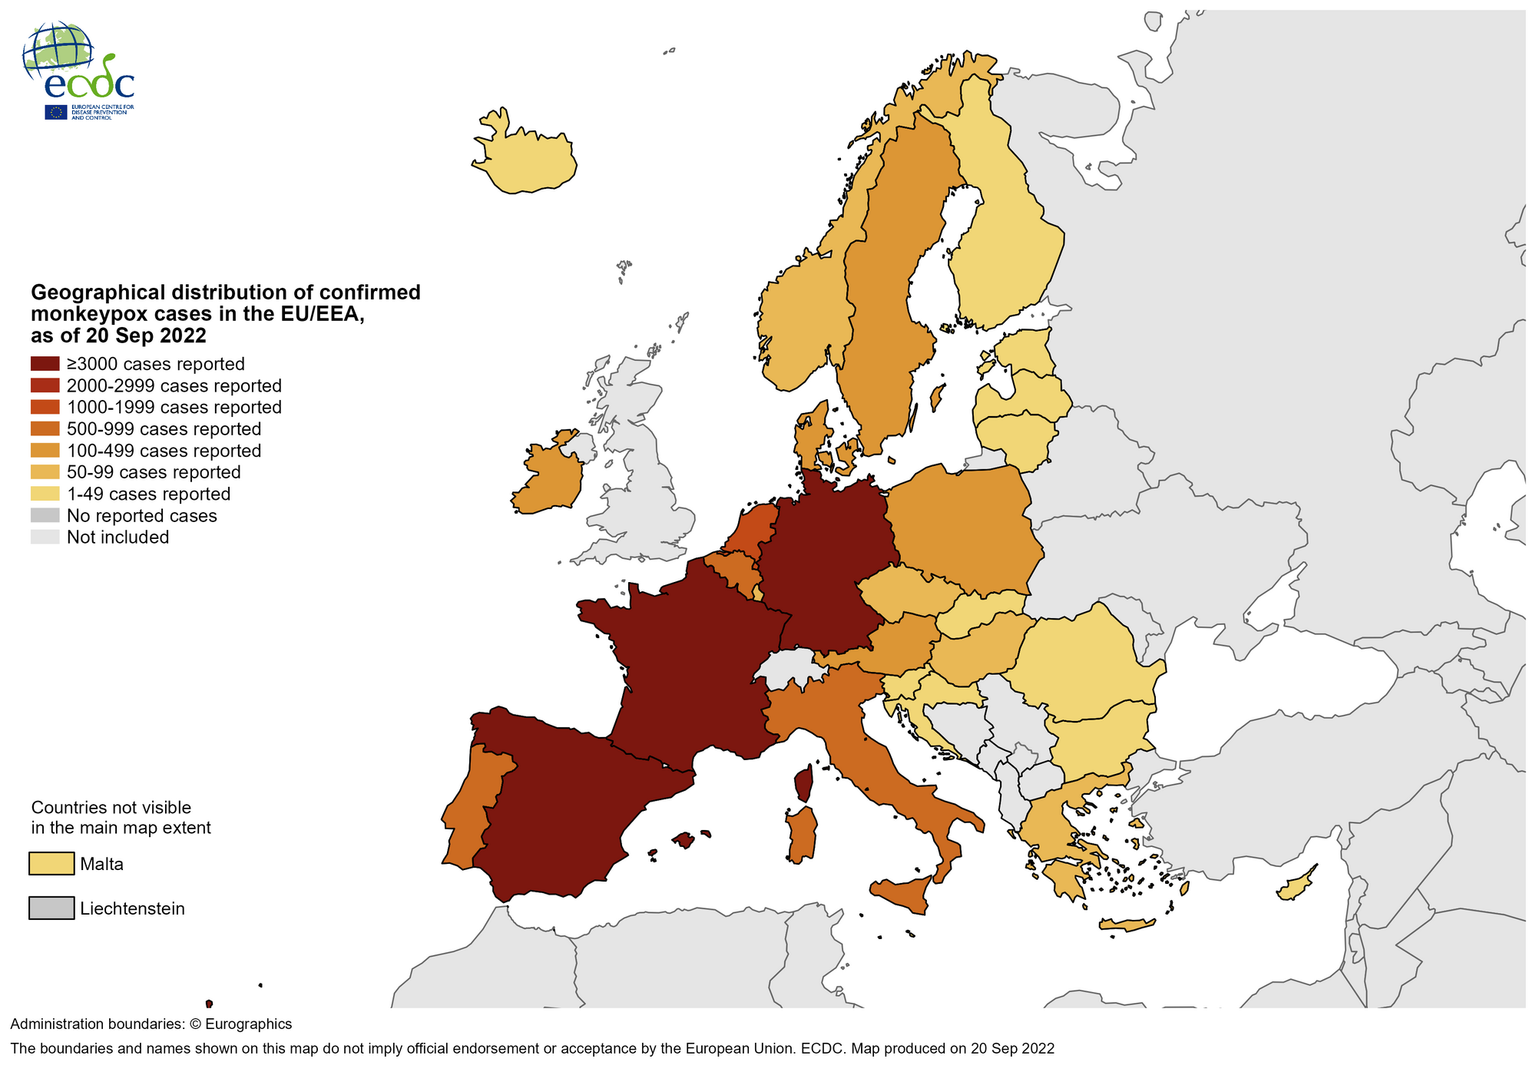 Mapa geográfico de la distribución de la viruela del mono en Europa